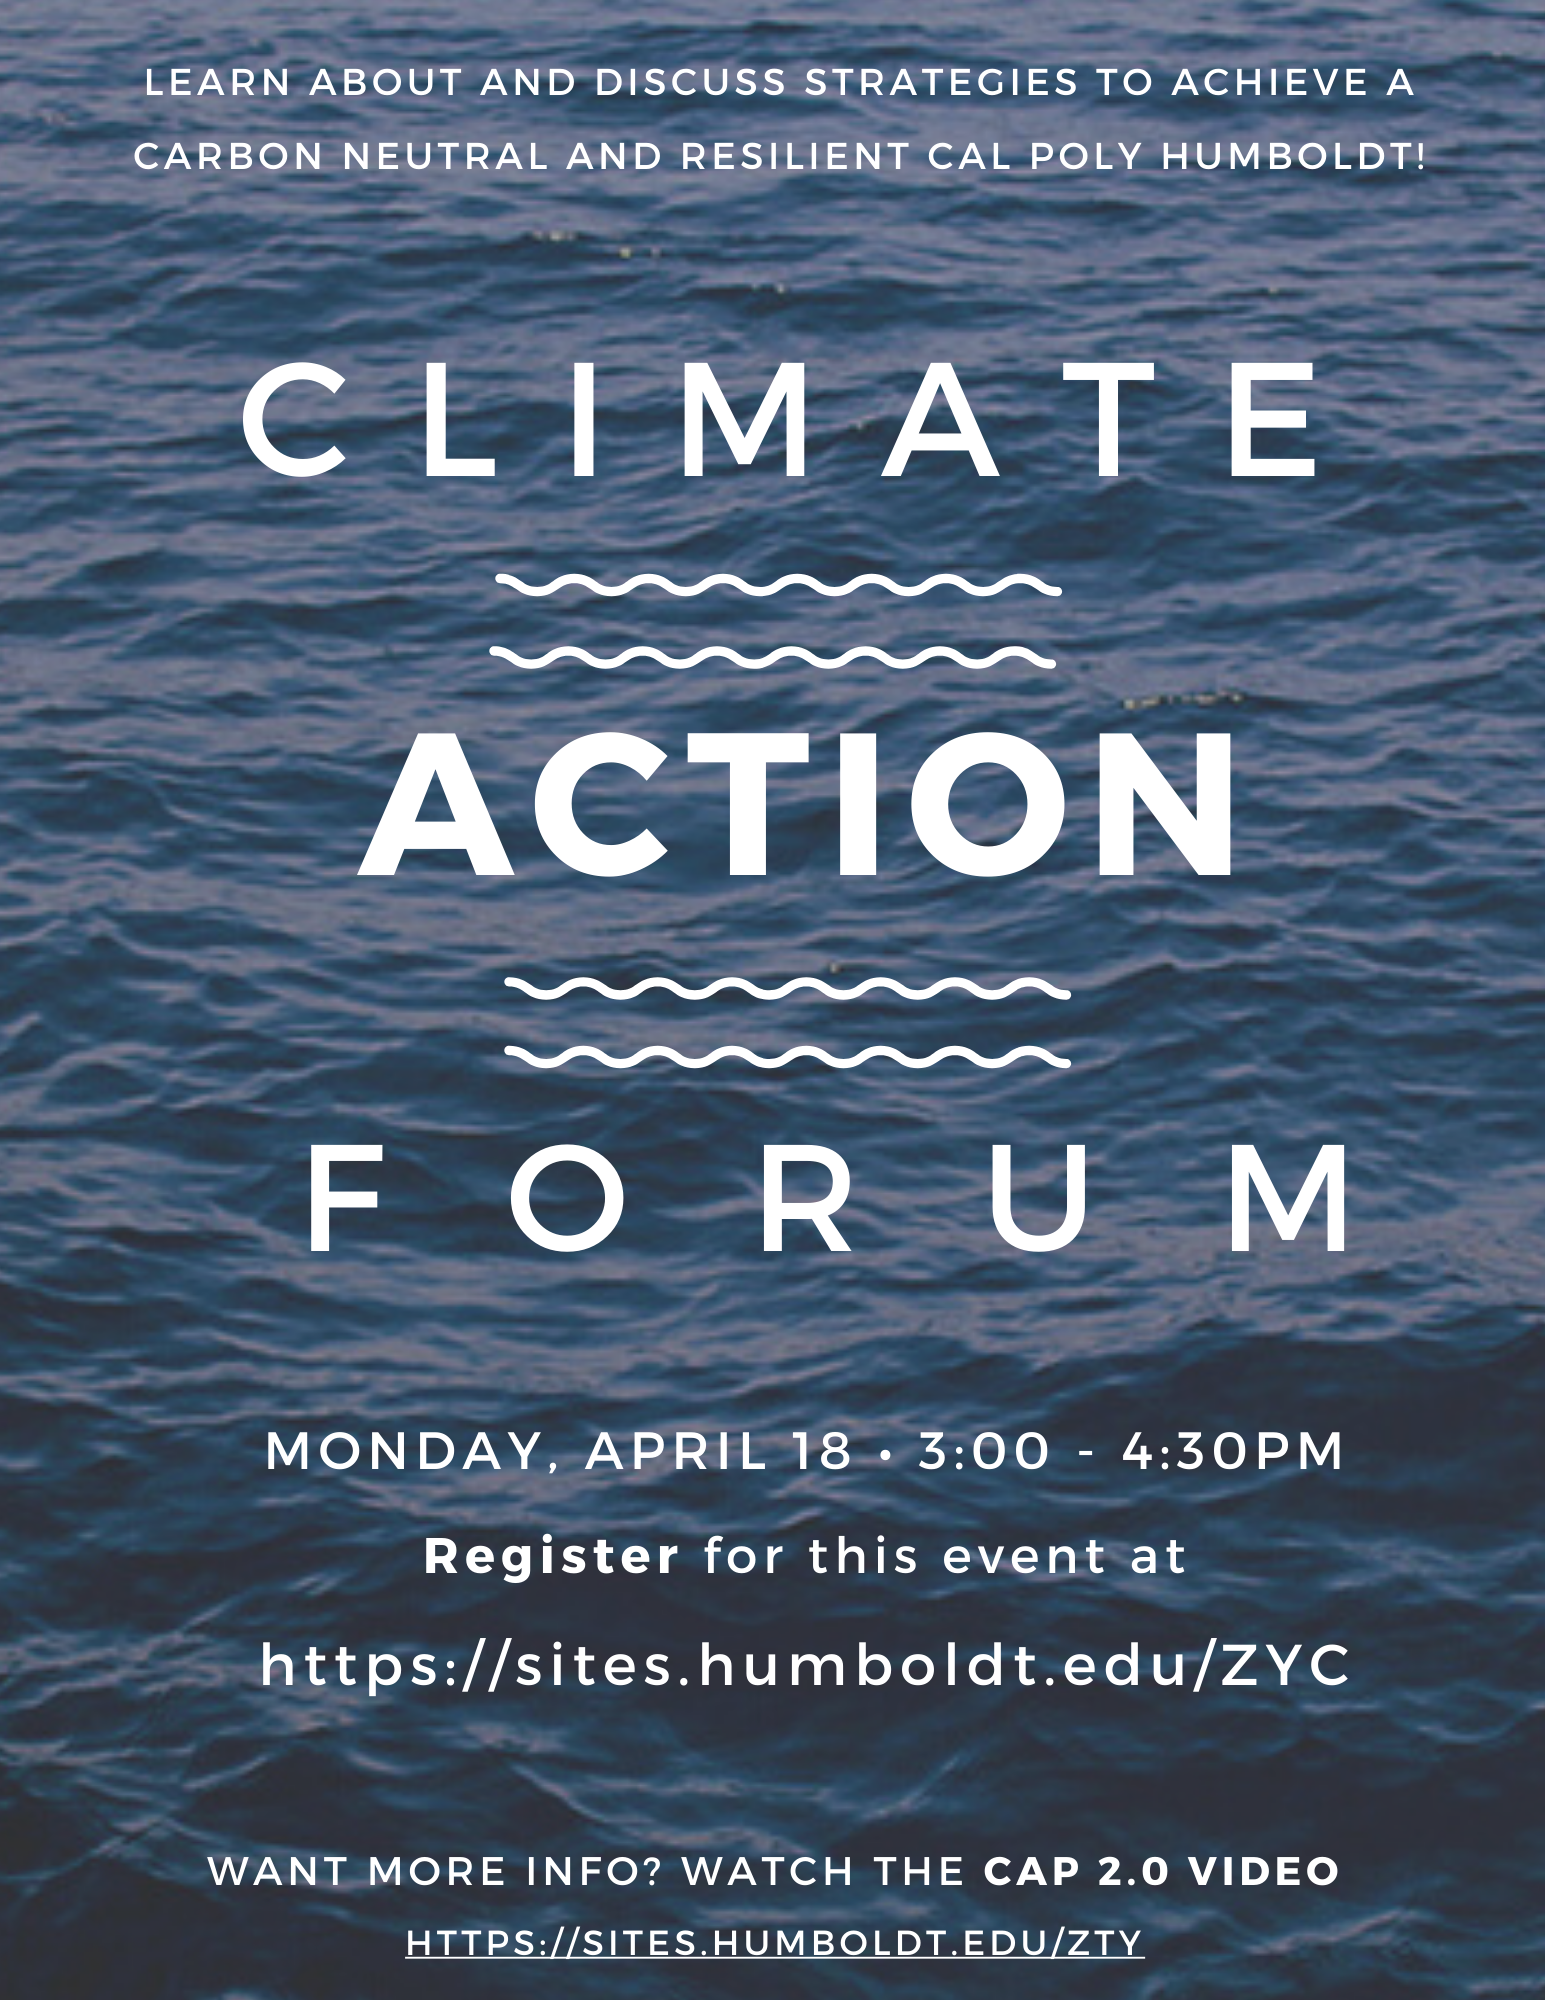 Flyer announcing Climate Action Plan public forum, April 18th 3-4:30pm. To register, go to https://sites.humboldt.edu/ZYC